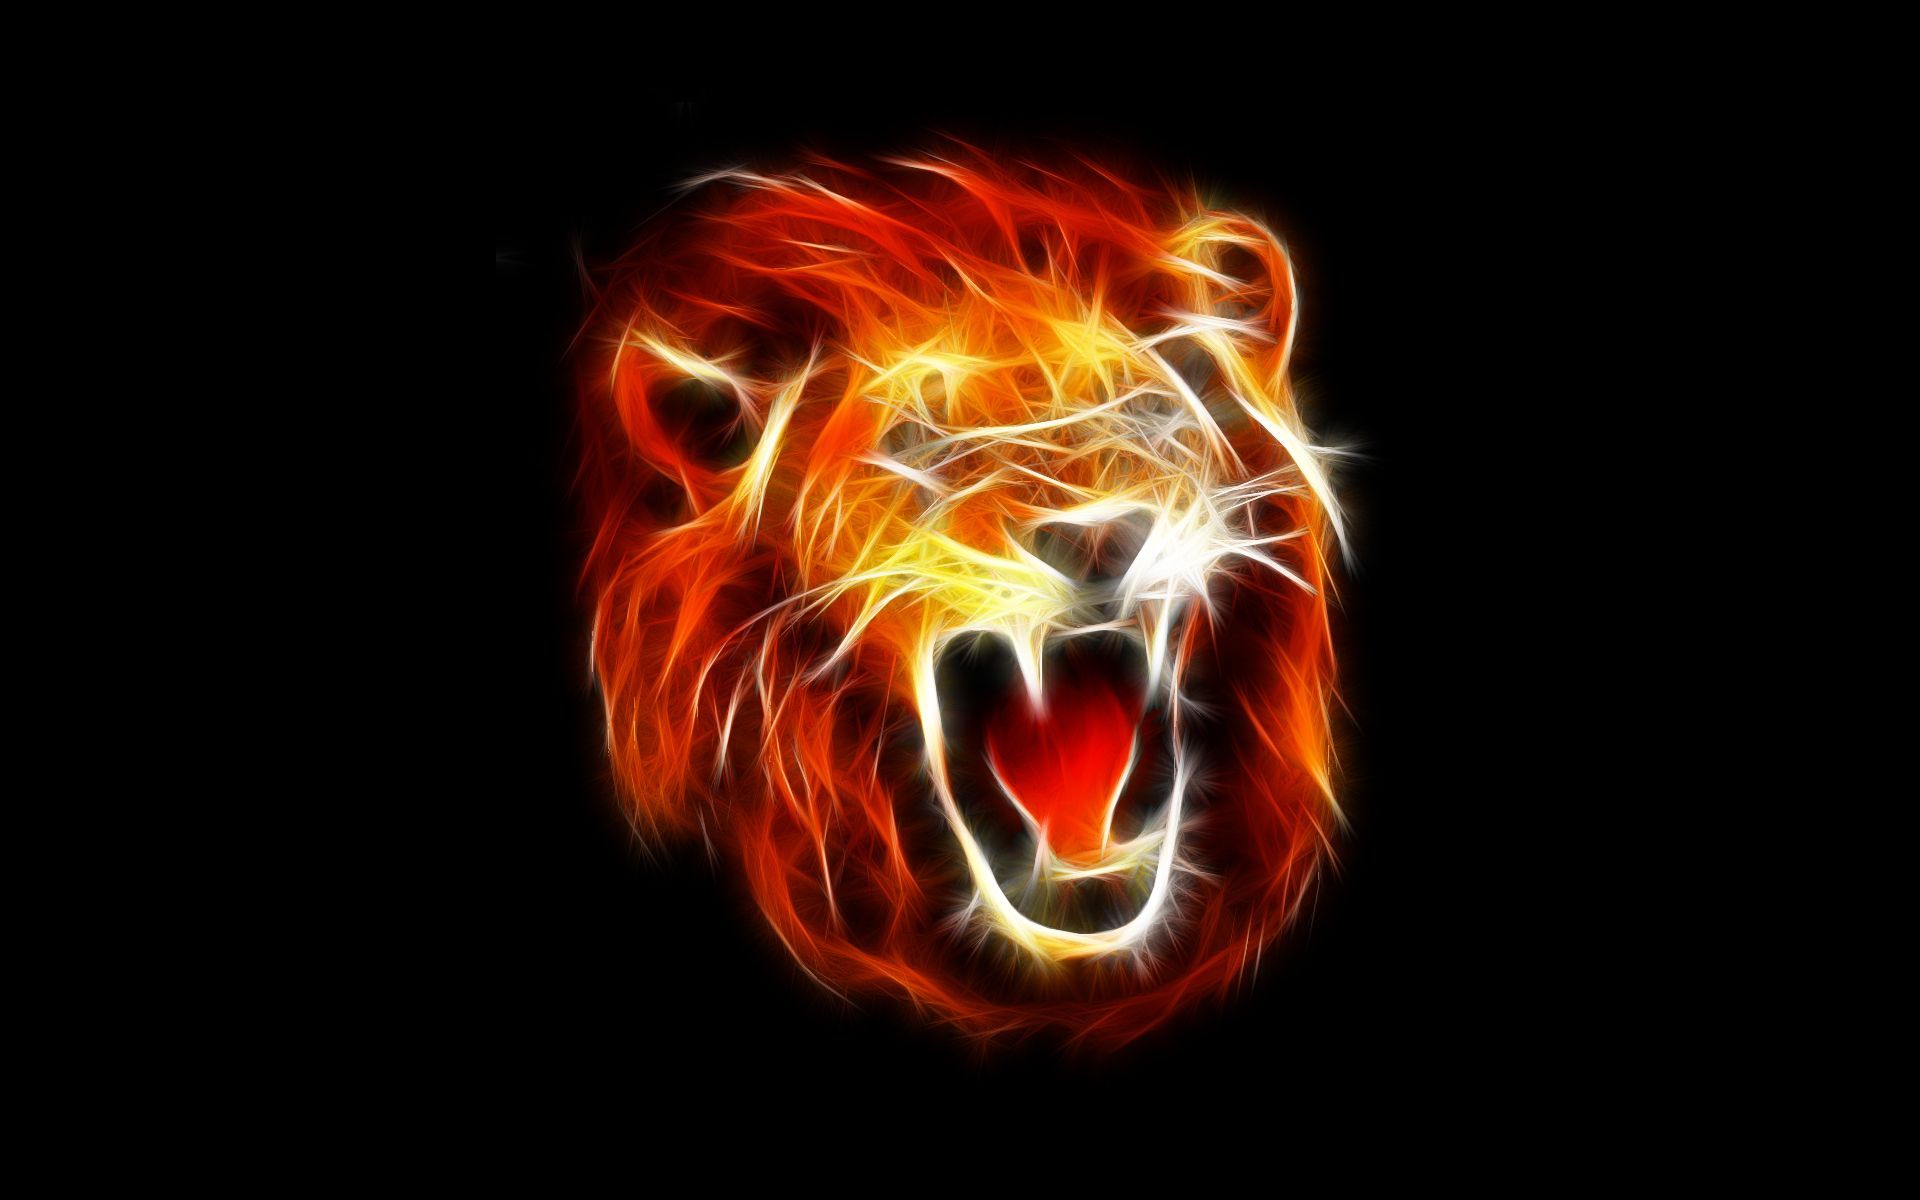 1600x900px Imagem Hd Fire Lion | #402241